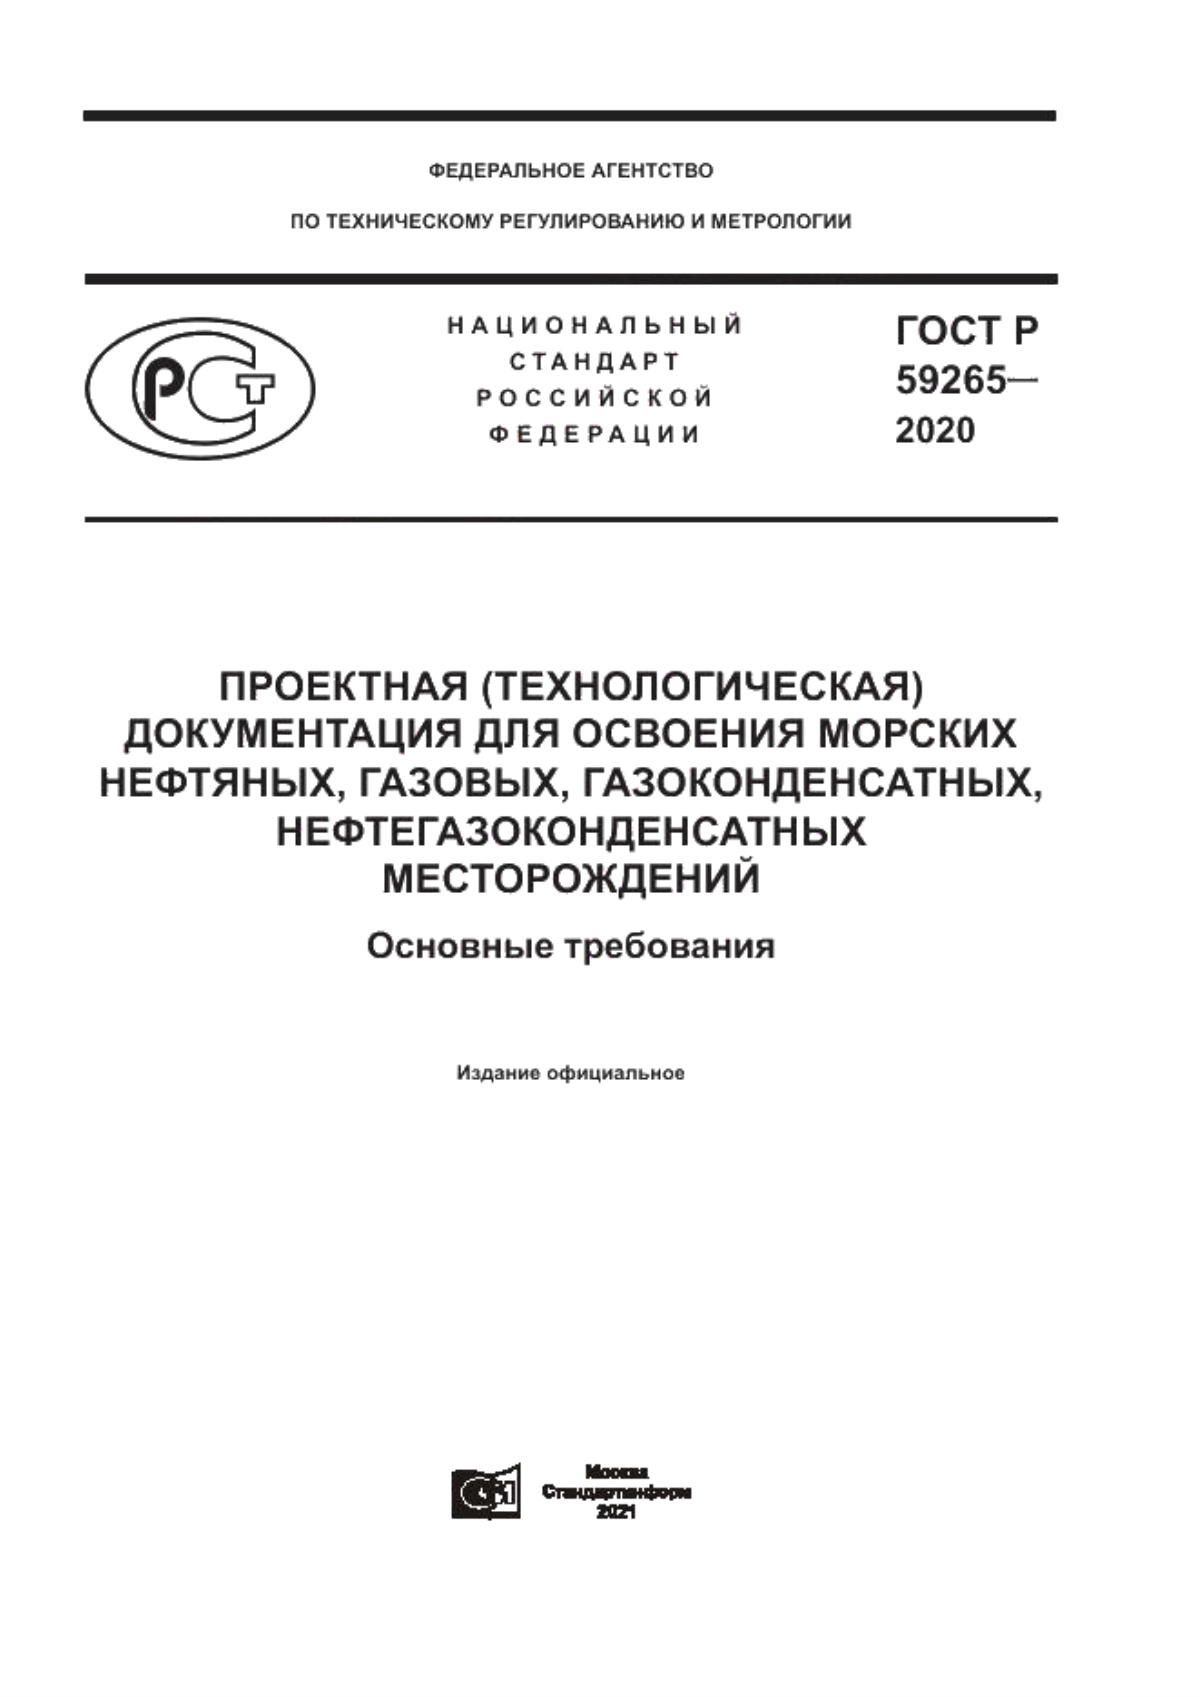 ГОСТ Р 59265-2020 Проектная (технологическая) документация для освоения морских нефтяных, газовых, газоконденсатных, нефтегазоконденсатных месторождений. Основные требования